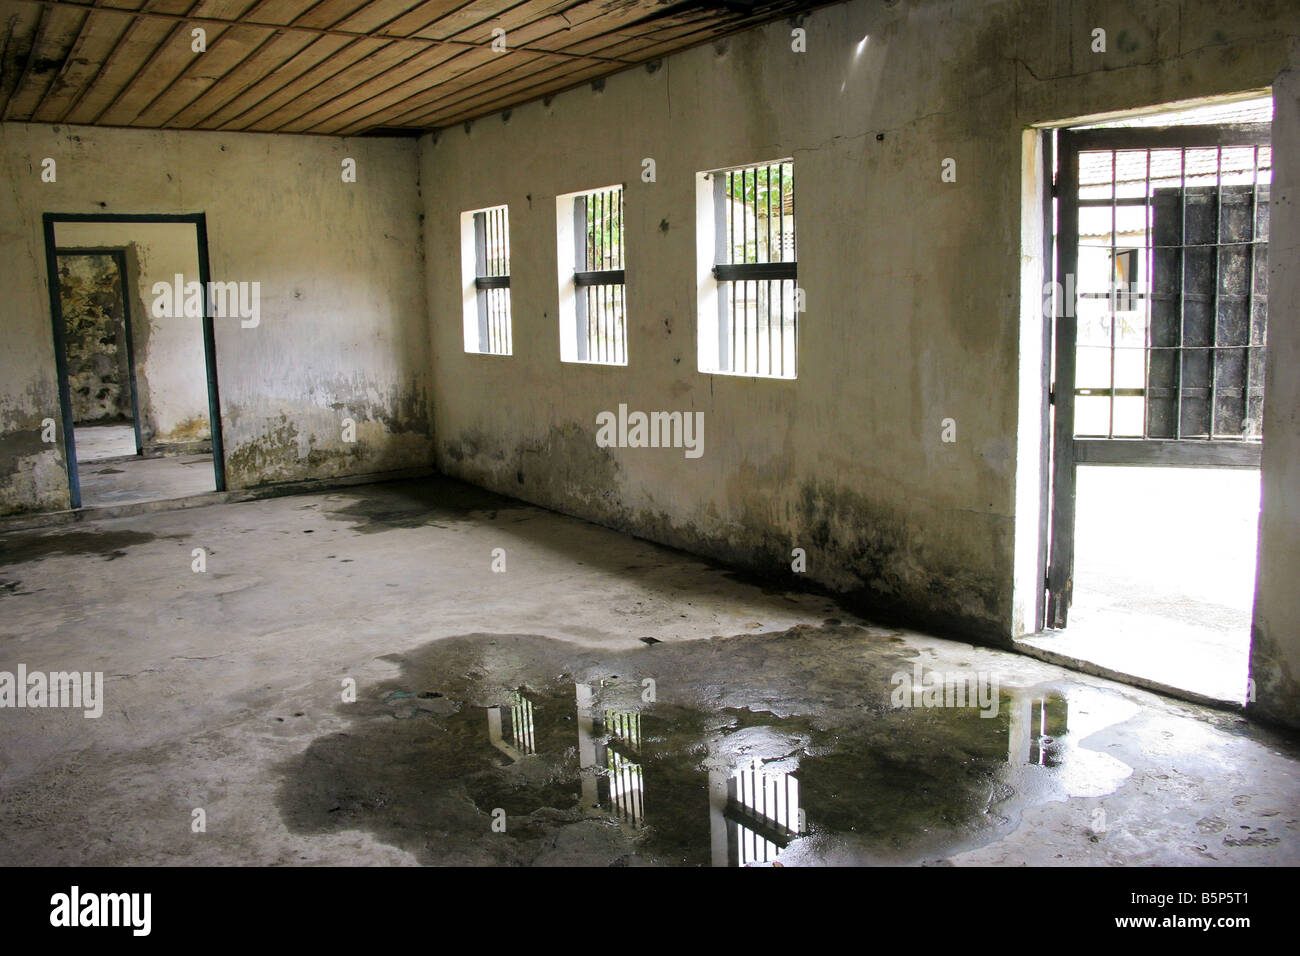 inside poulo condor's convict prison, con son island, vietnam Stock Photo